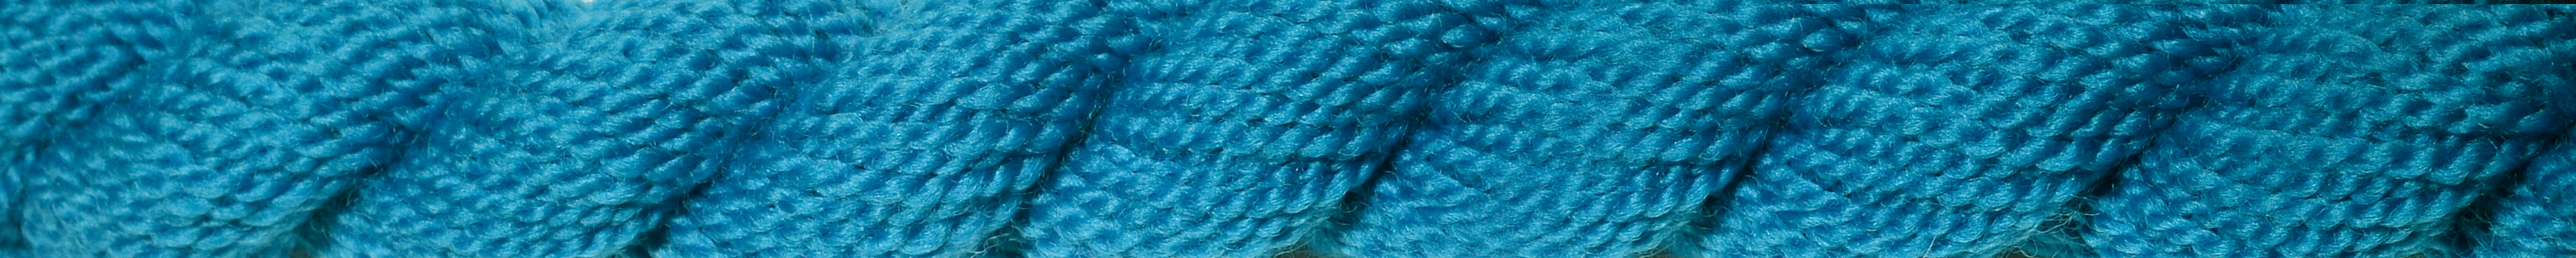 WIL - Vineyard Silk - Merino Wool - M-1207 - Sapphire